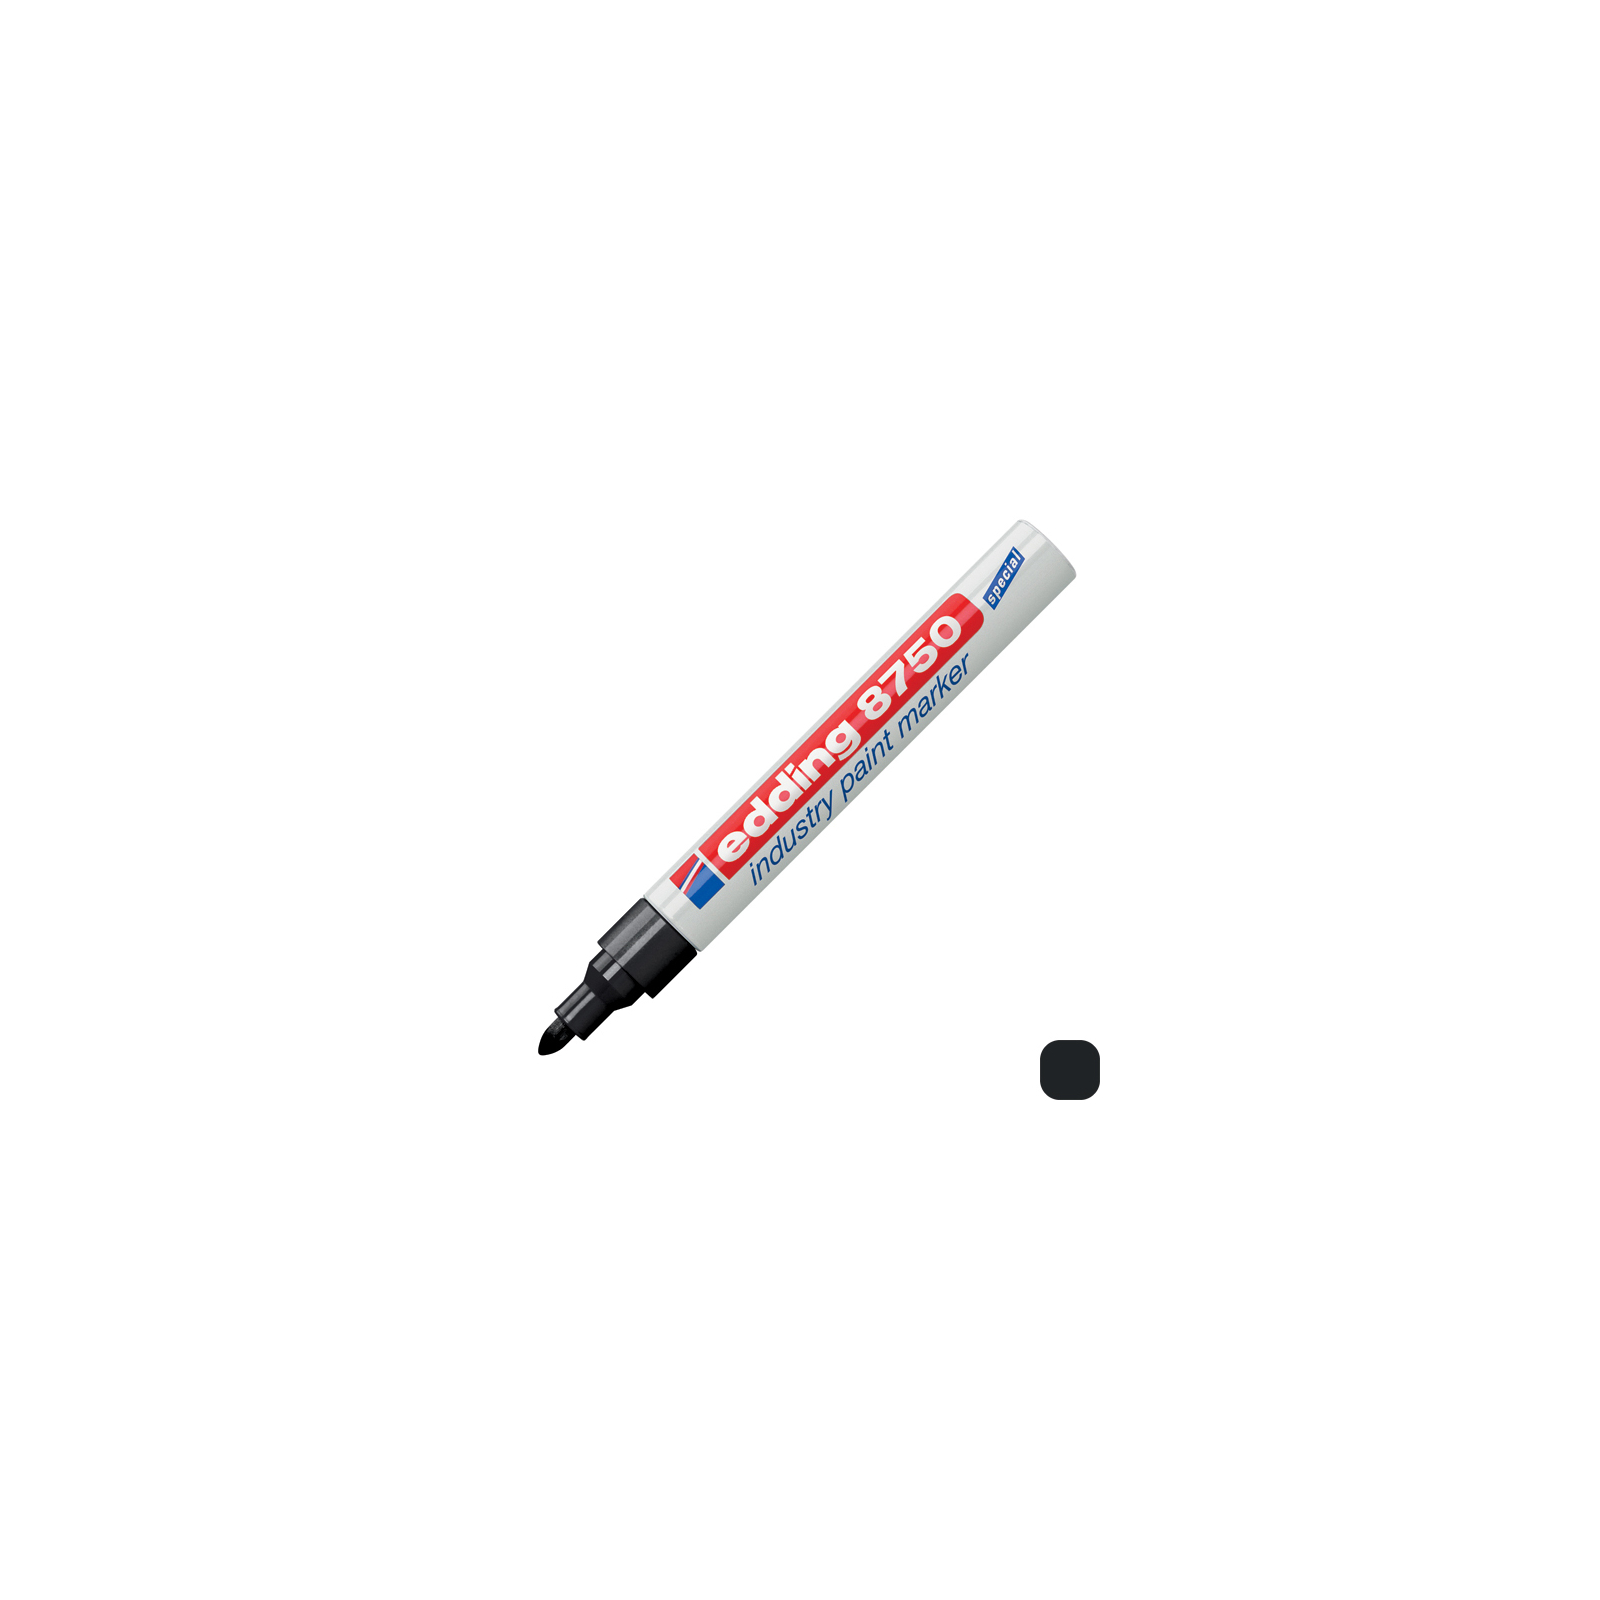 Маркер Edding Специальный промышленный лак-маркер Industry Paint 8750 2-4 мм (e-8750/02) изображение 2